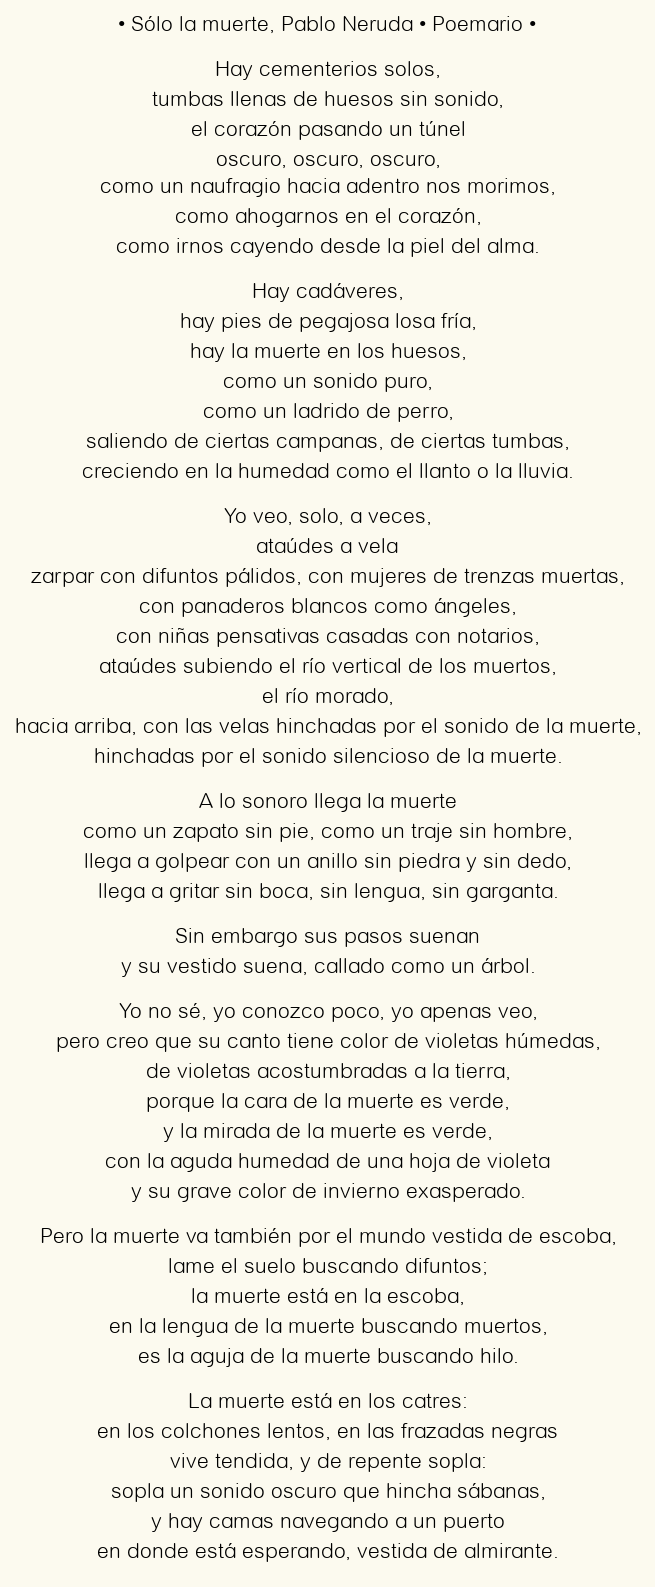 Imagen con el poema Sólo la muerte, por Pablo Neruda